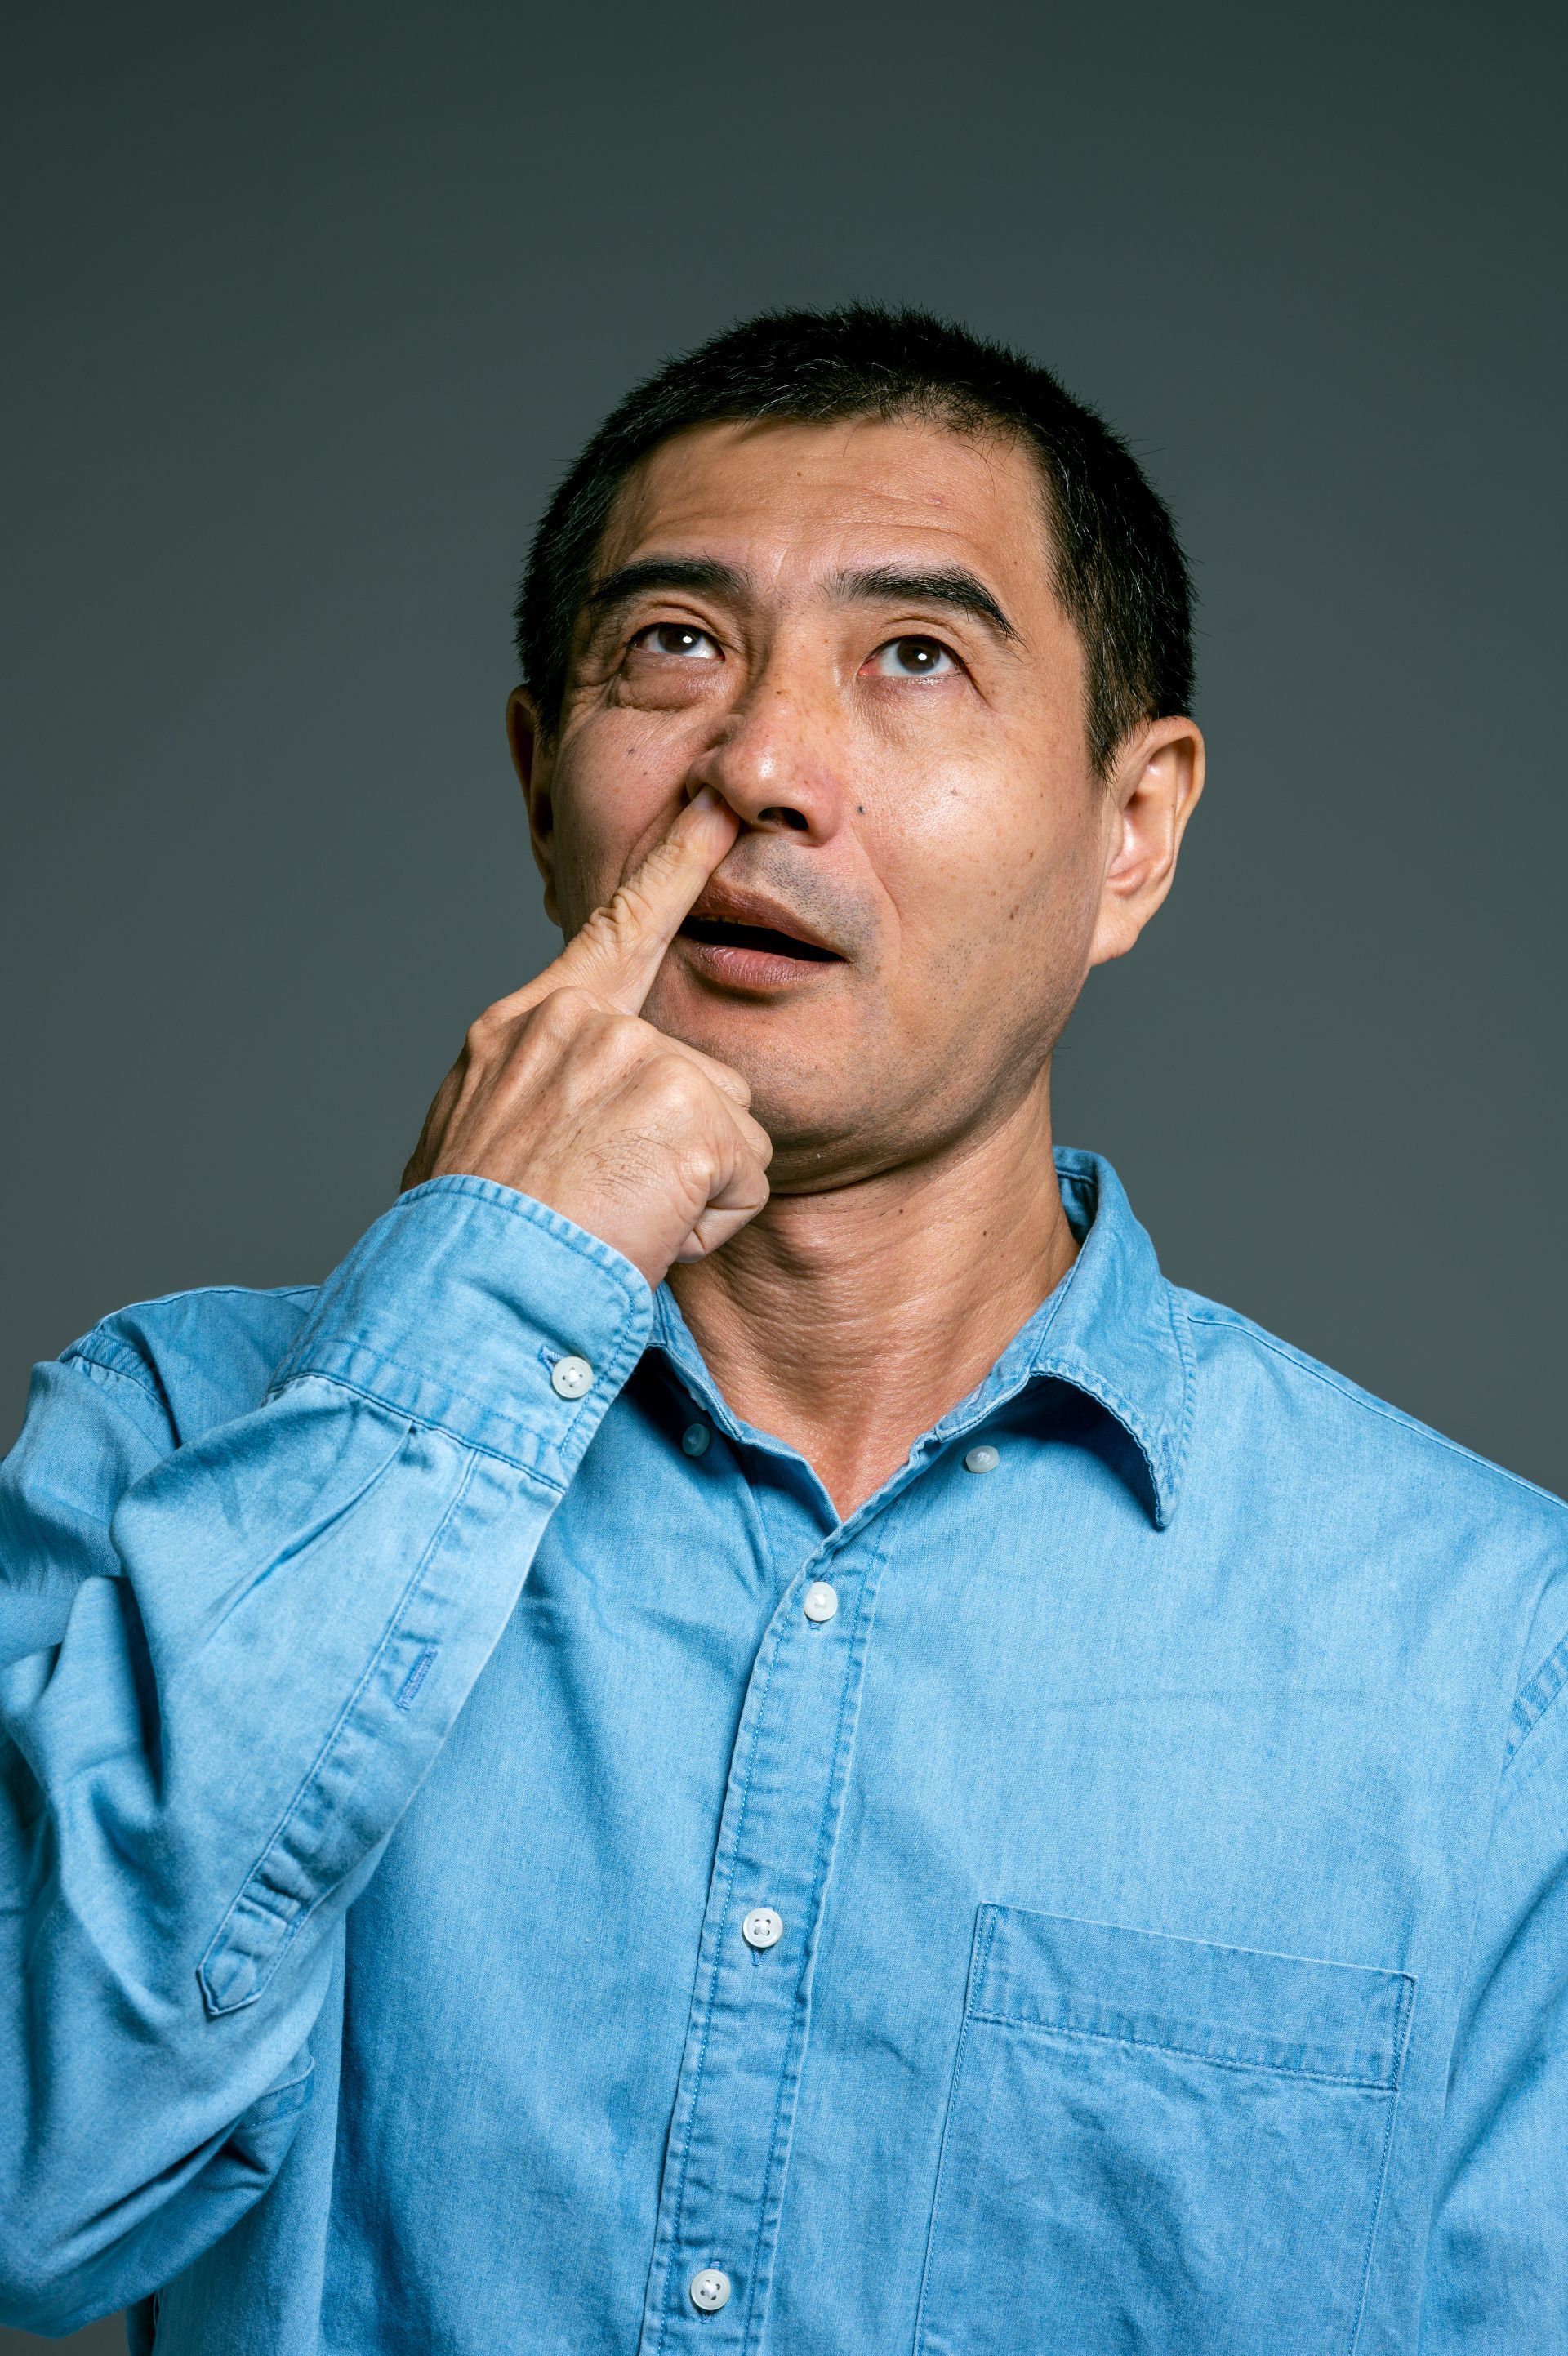 Curățarea nasului cu degetul nu cauzează boala Alzheimer